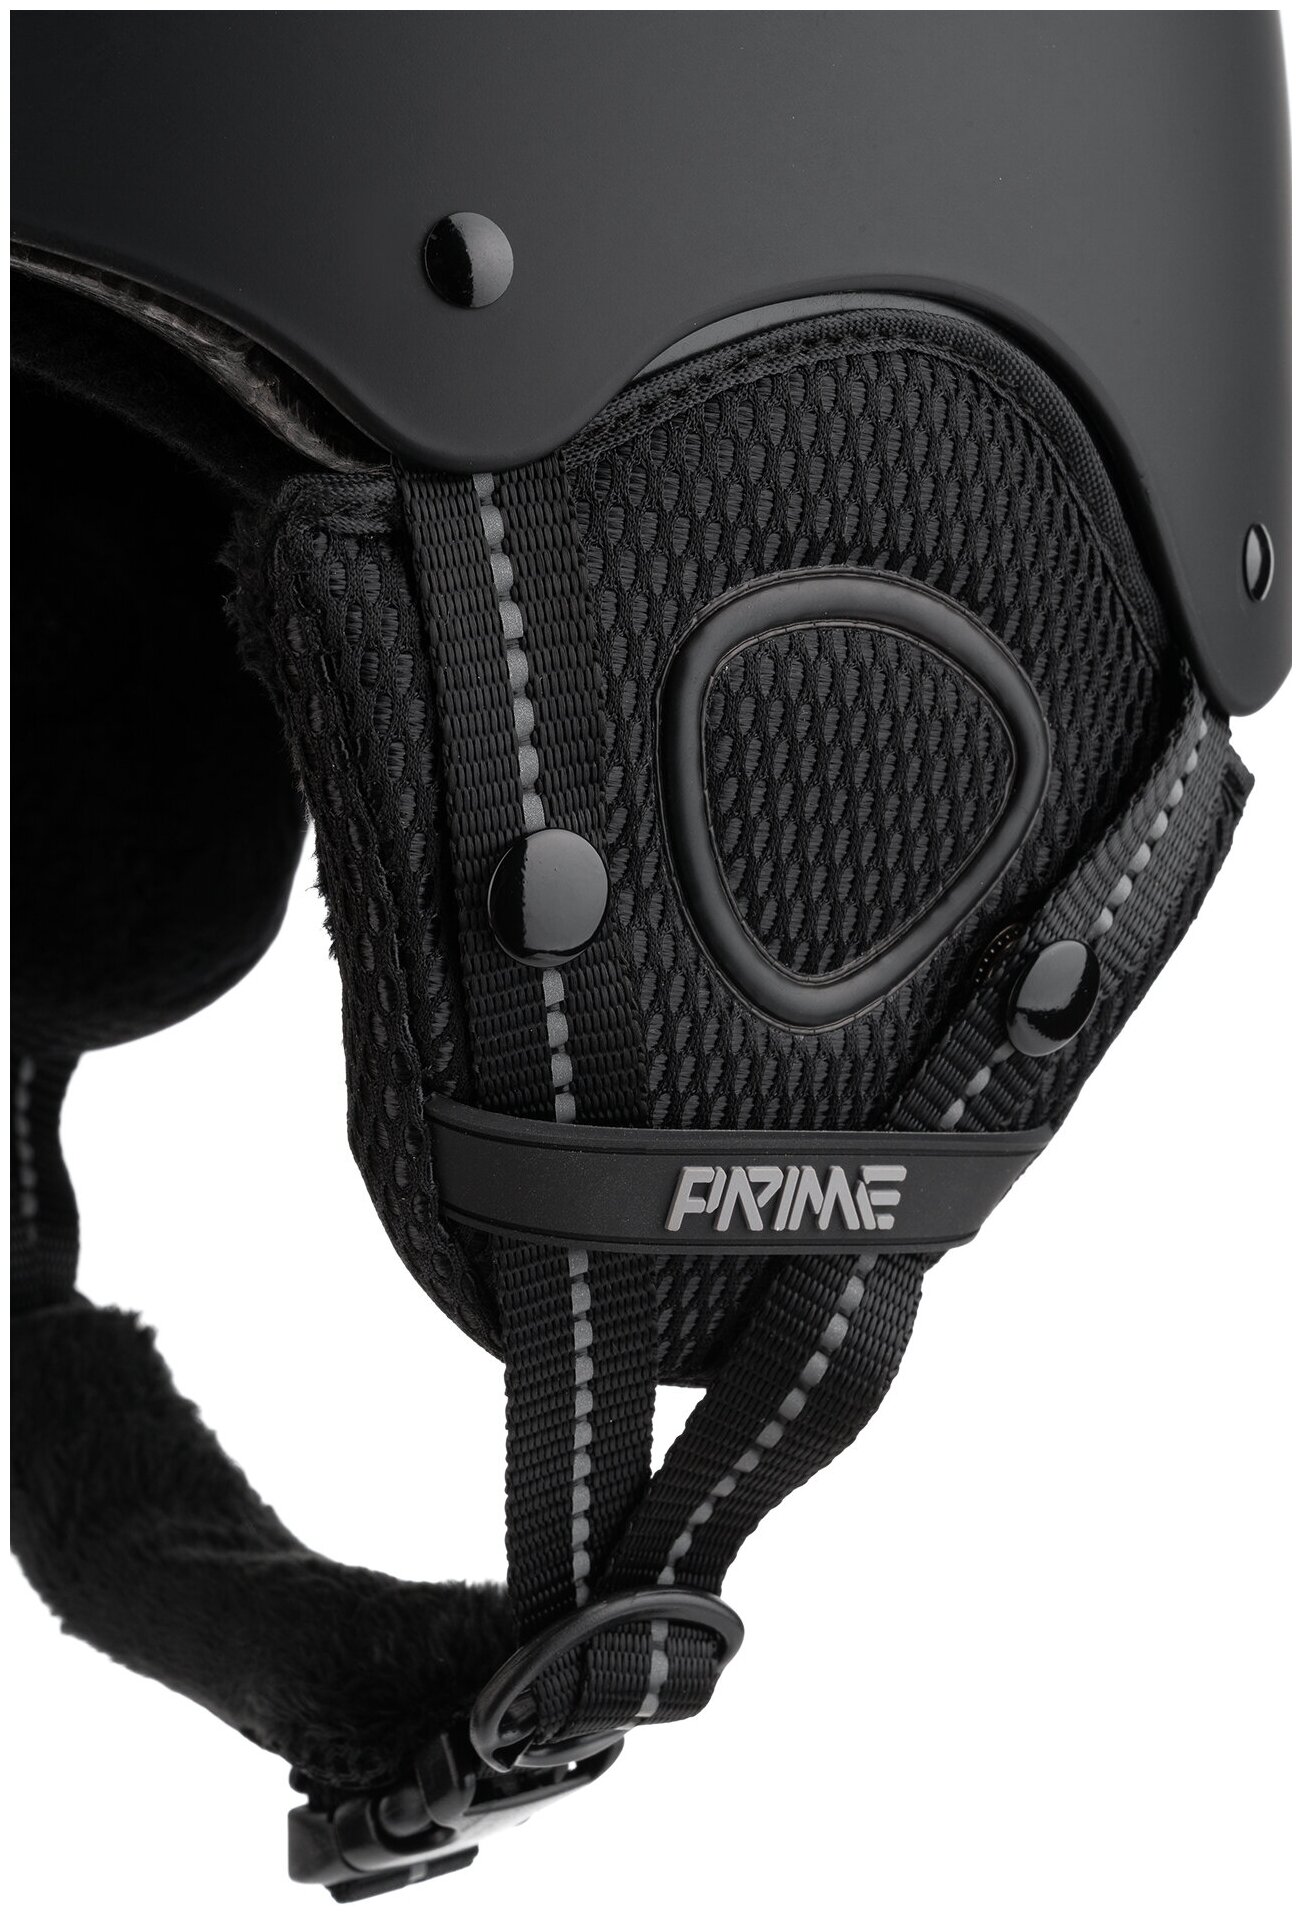 Шлем горнолыжный/Шлем сноубордический/Шлем для сноуборда PRIME - FUN F1 Black, размер S (53-55)